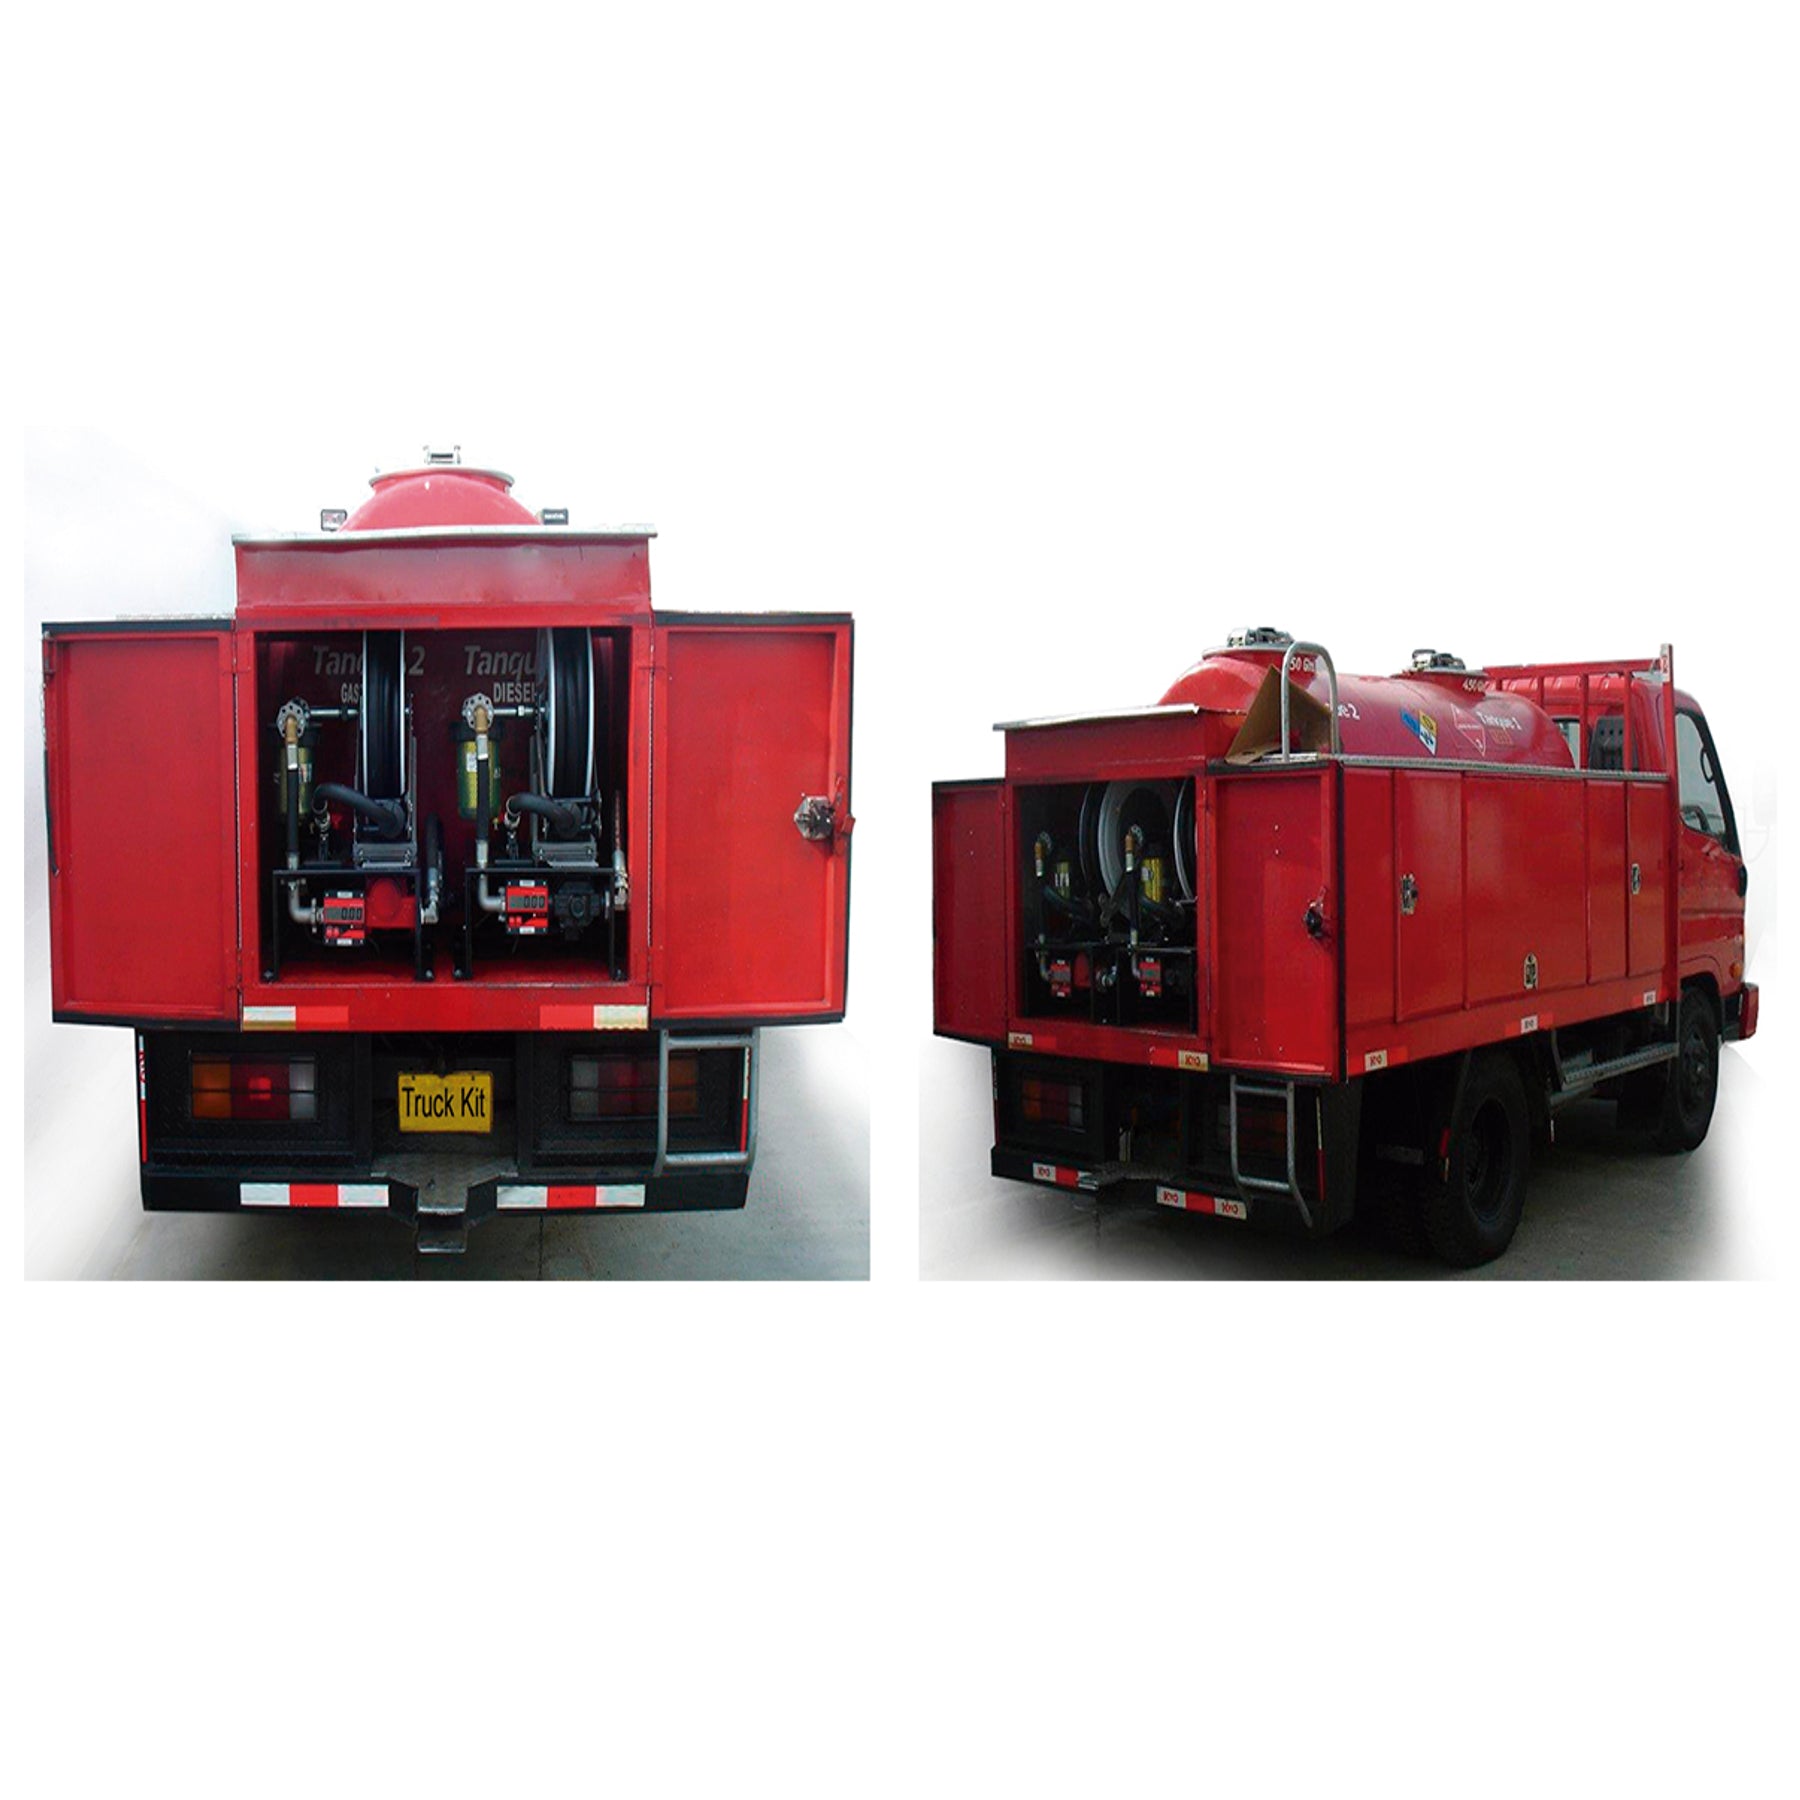 Gespasa diesel truck pump kit for diesel tanker mounted